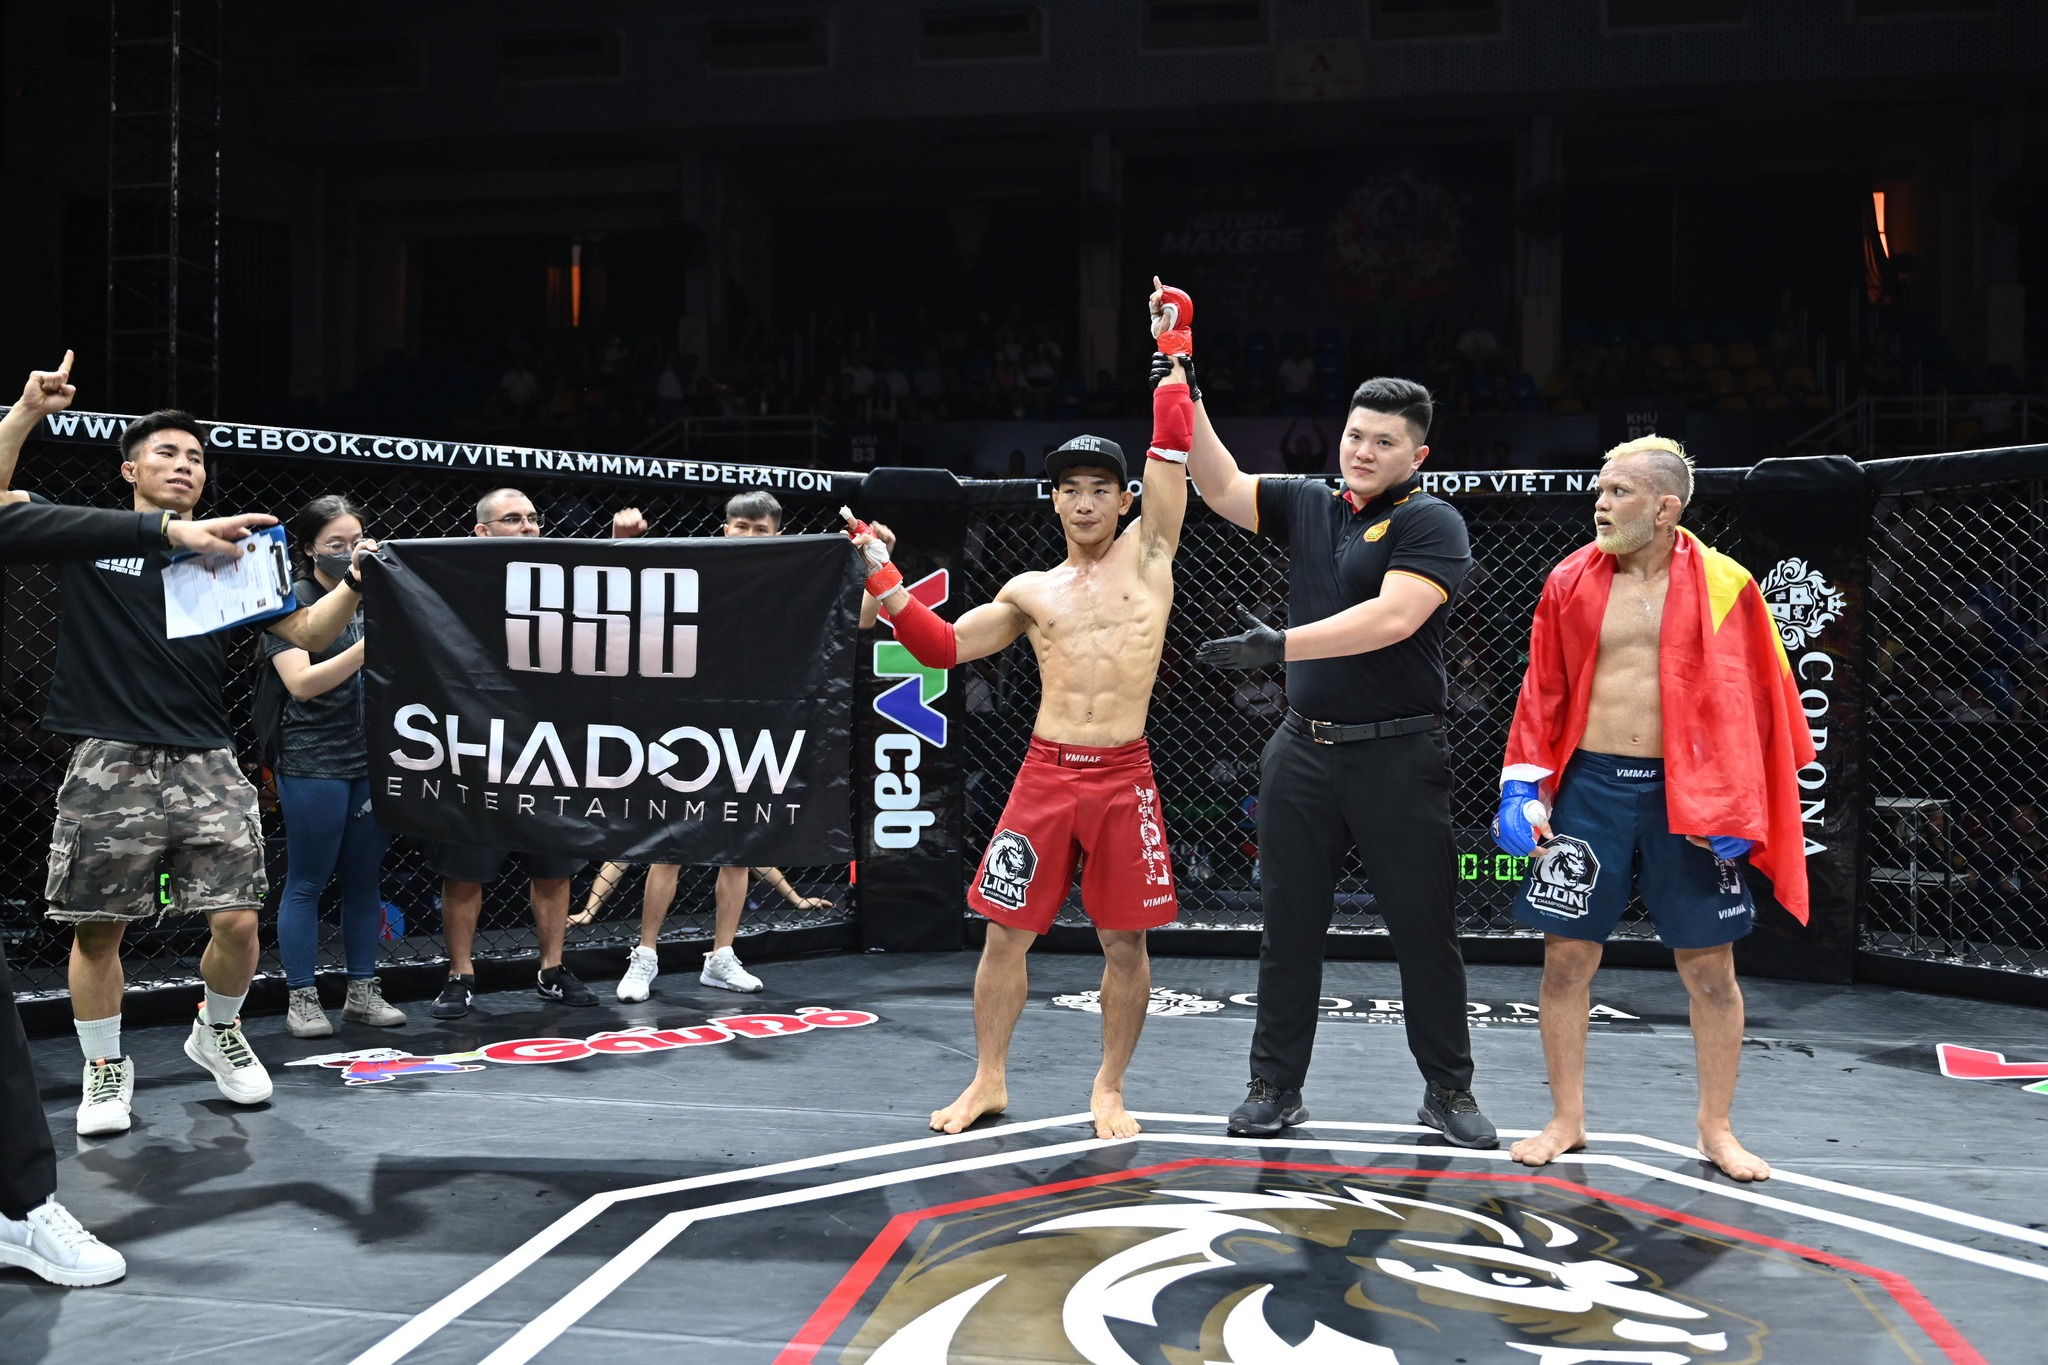 VIDEO: Liên đoàn MMA Việt Nam thừa nhận sai sót khi võ sĩ Brazin bị xử thua trắng trợn